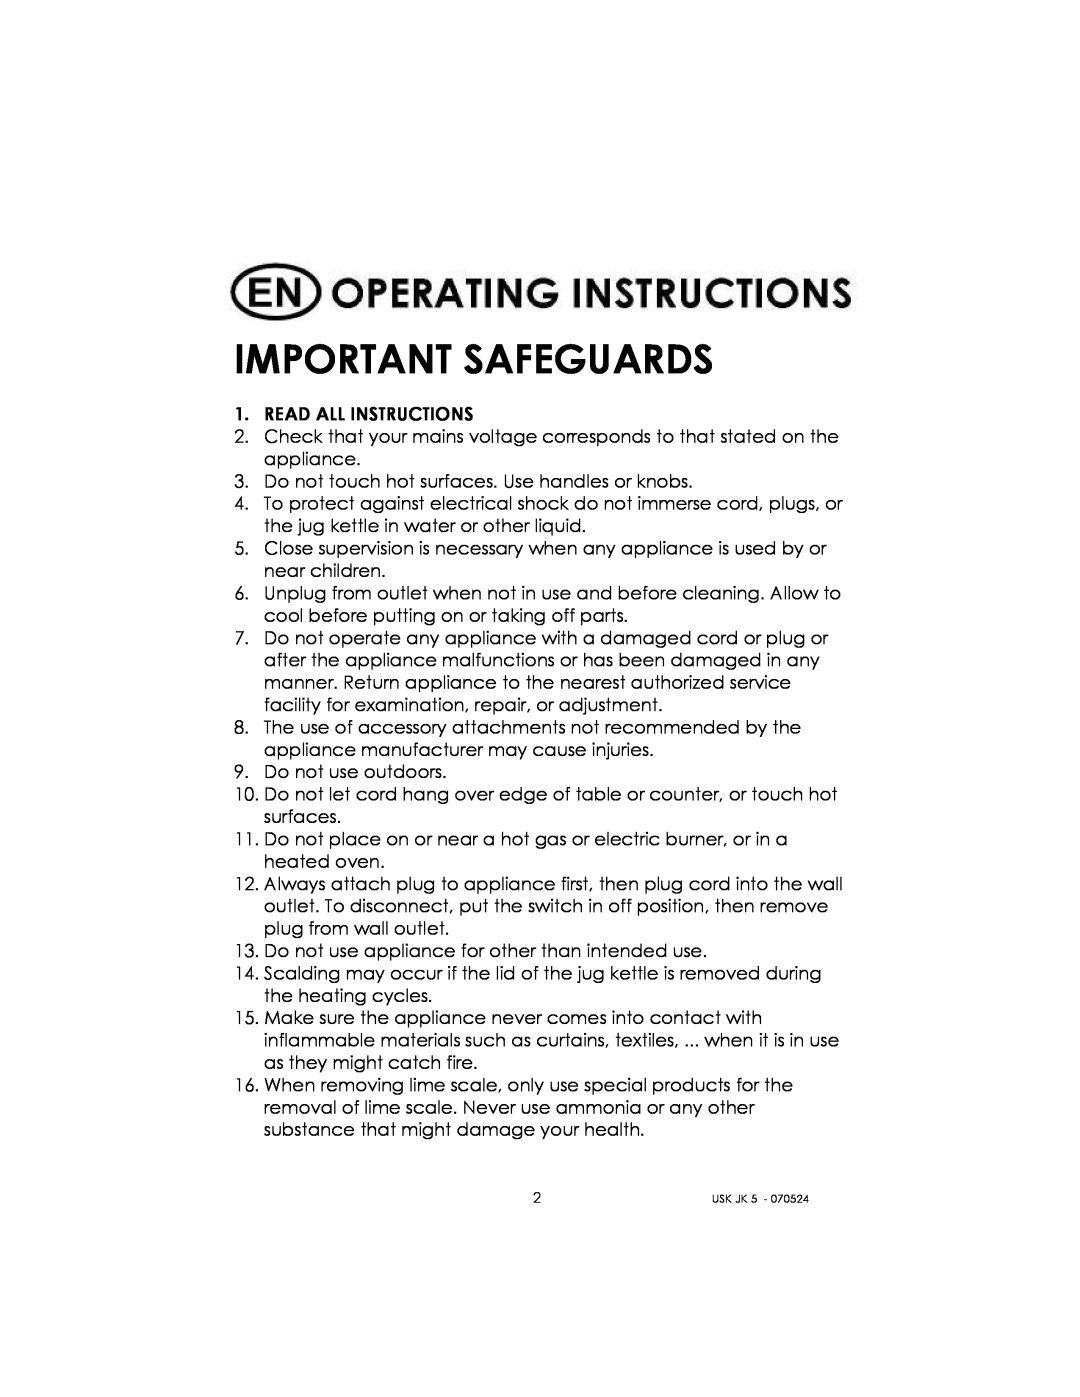 Kalorik USK JK 5 manual Important Safeguards 